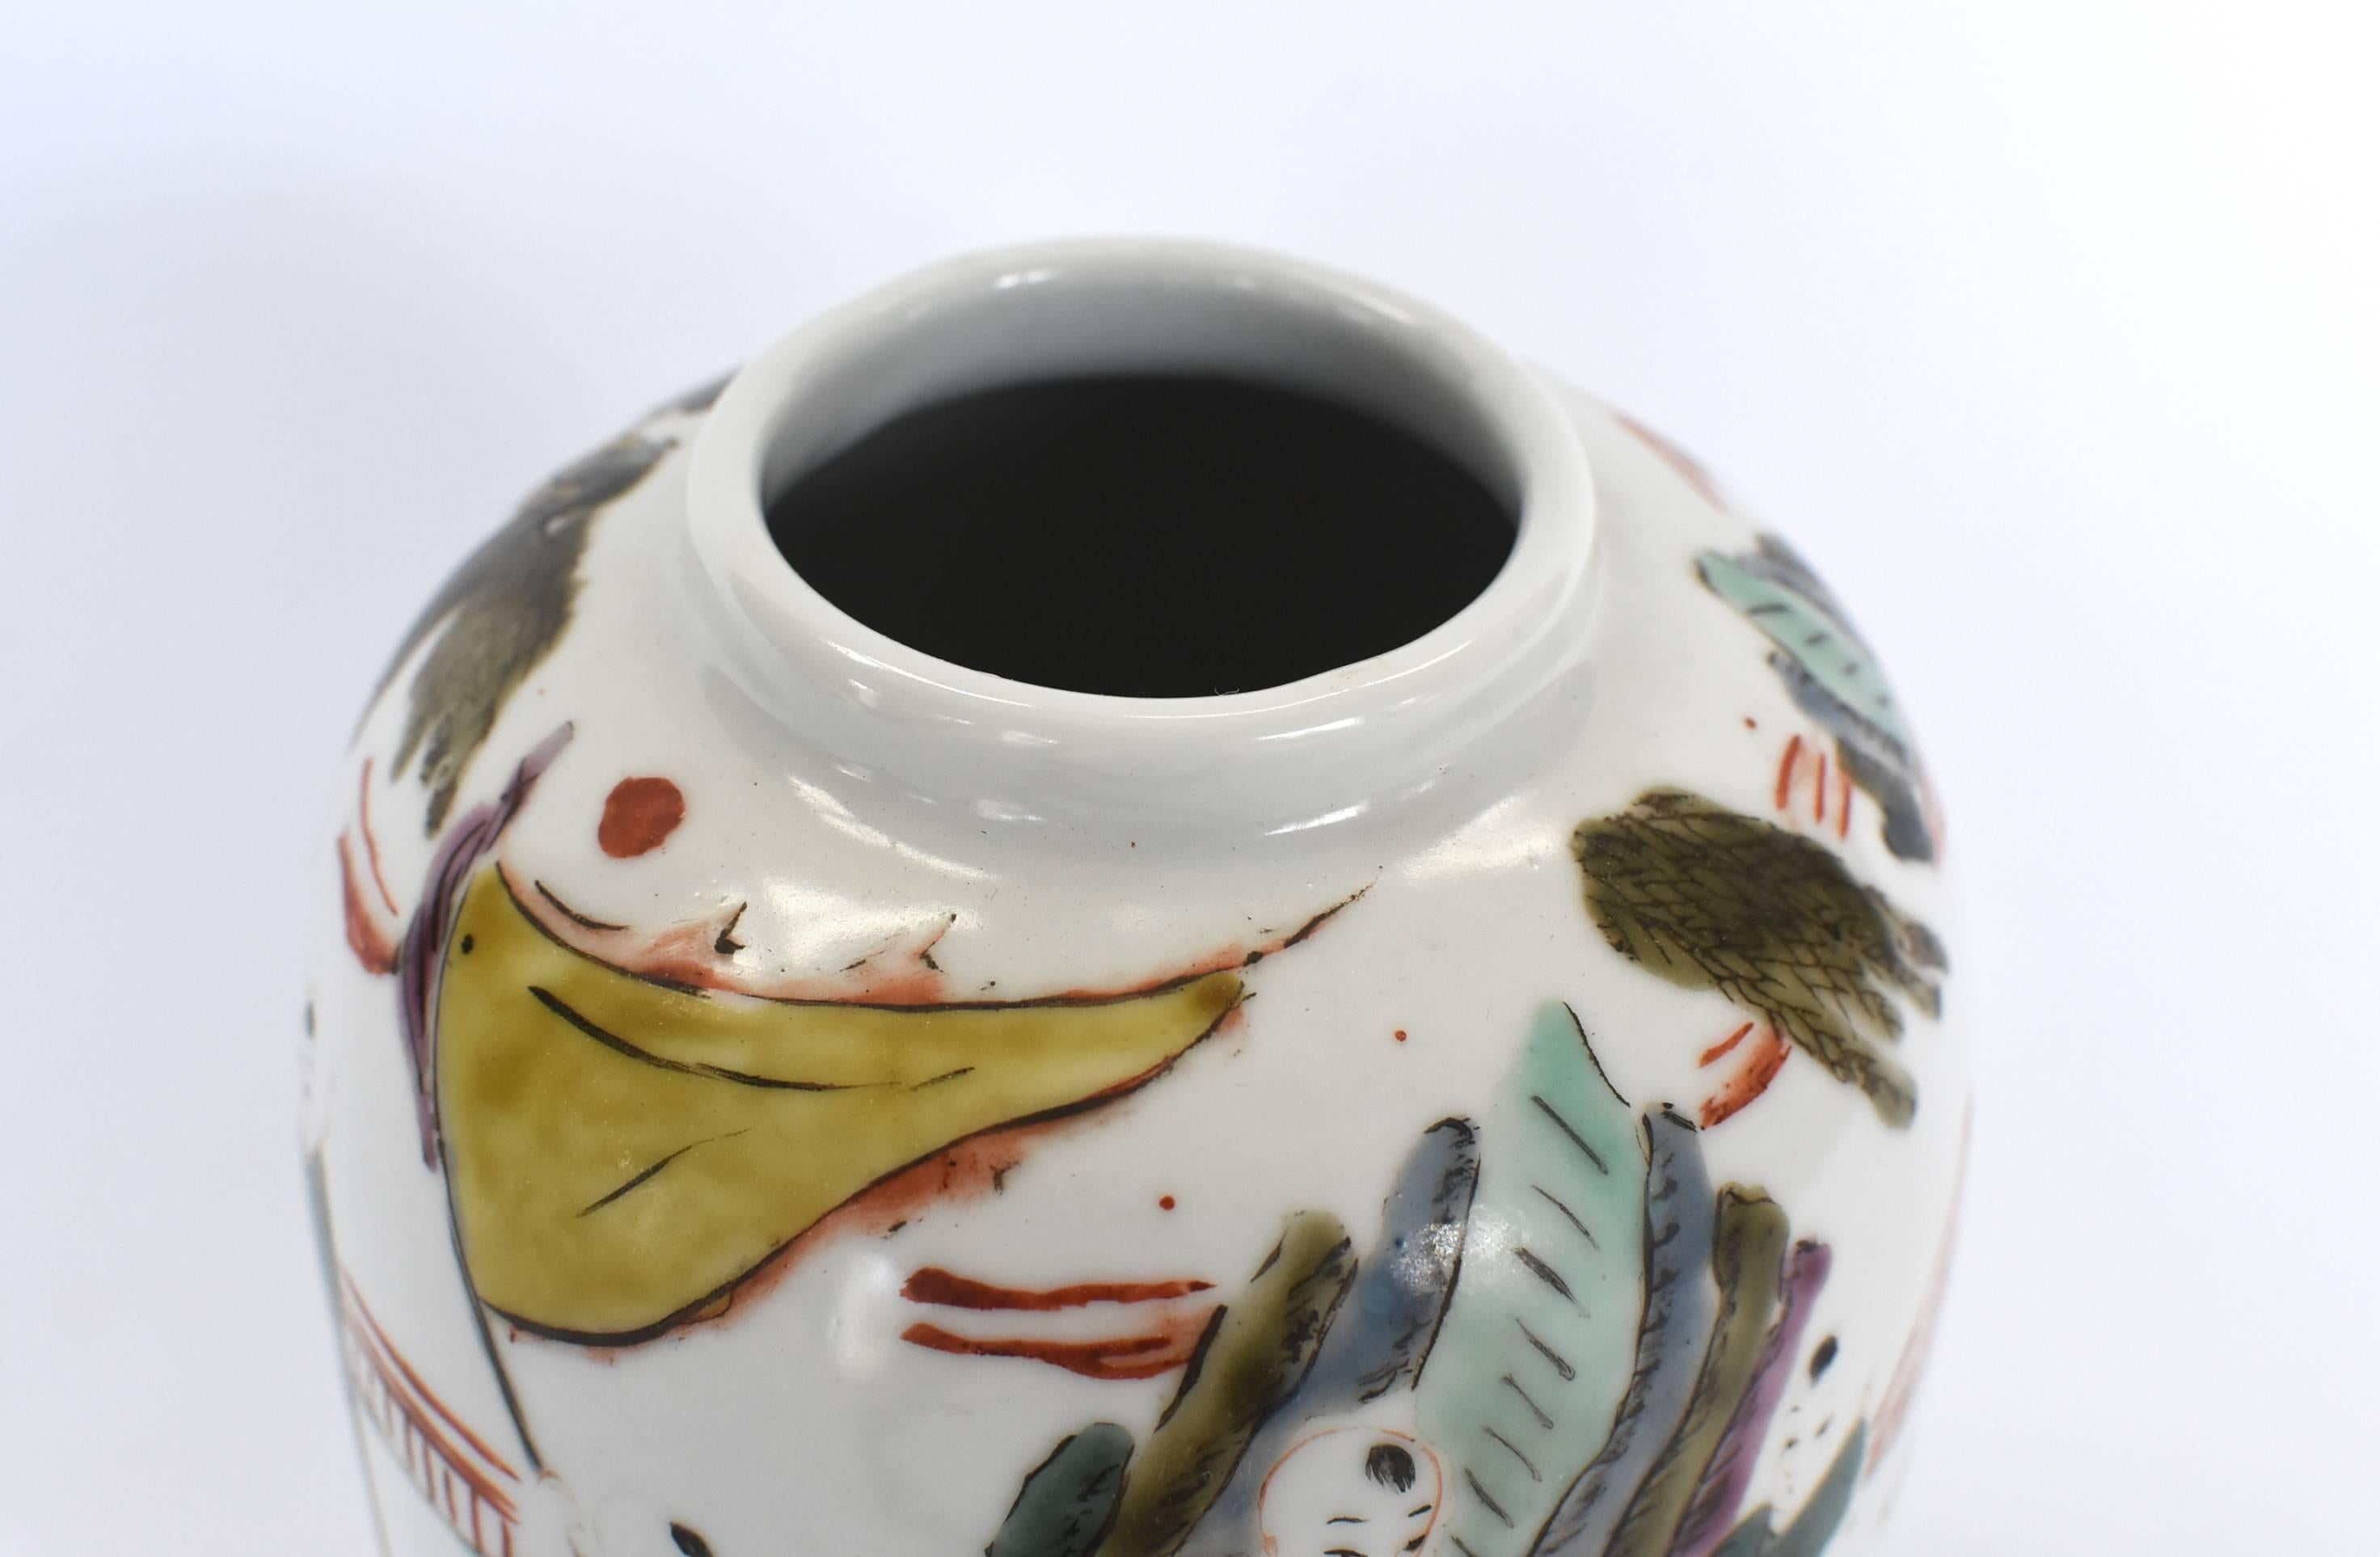 Chinese Porcelain Vase, Republic Era, with Maker's Mark 1